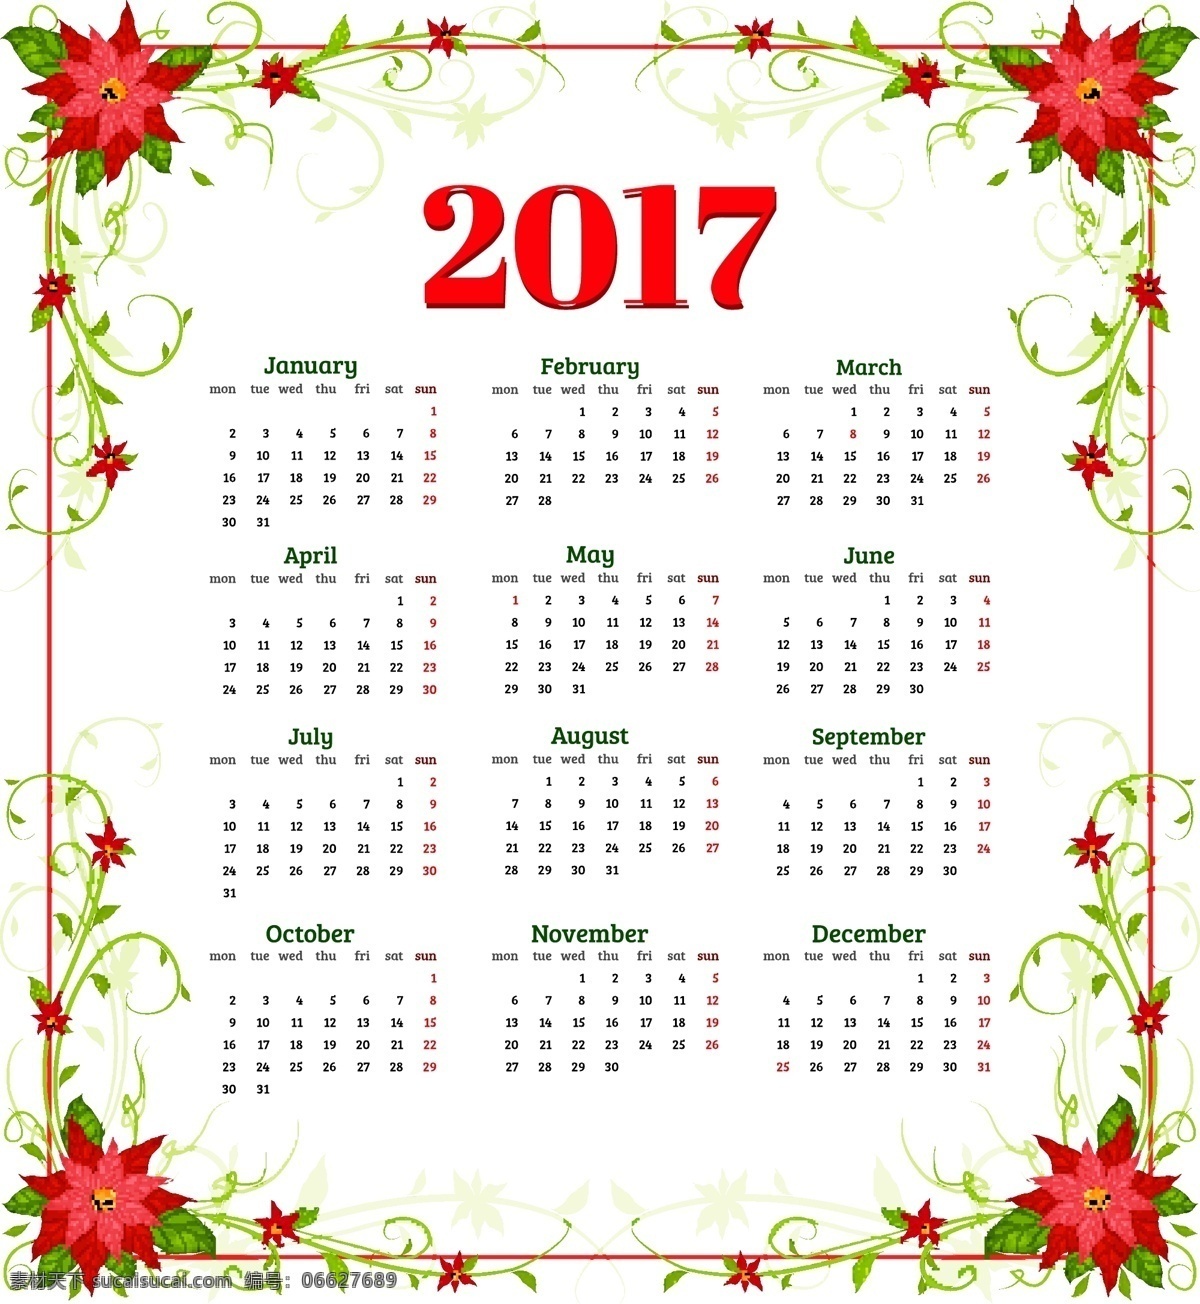 年历 日历 花朵 2017 年 矢量 节日素材 矢量模板 时尚矢量图片 节日 背景设计 矢量背景